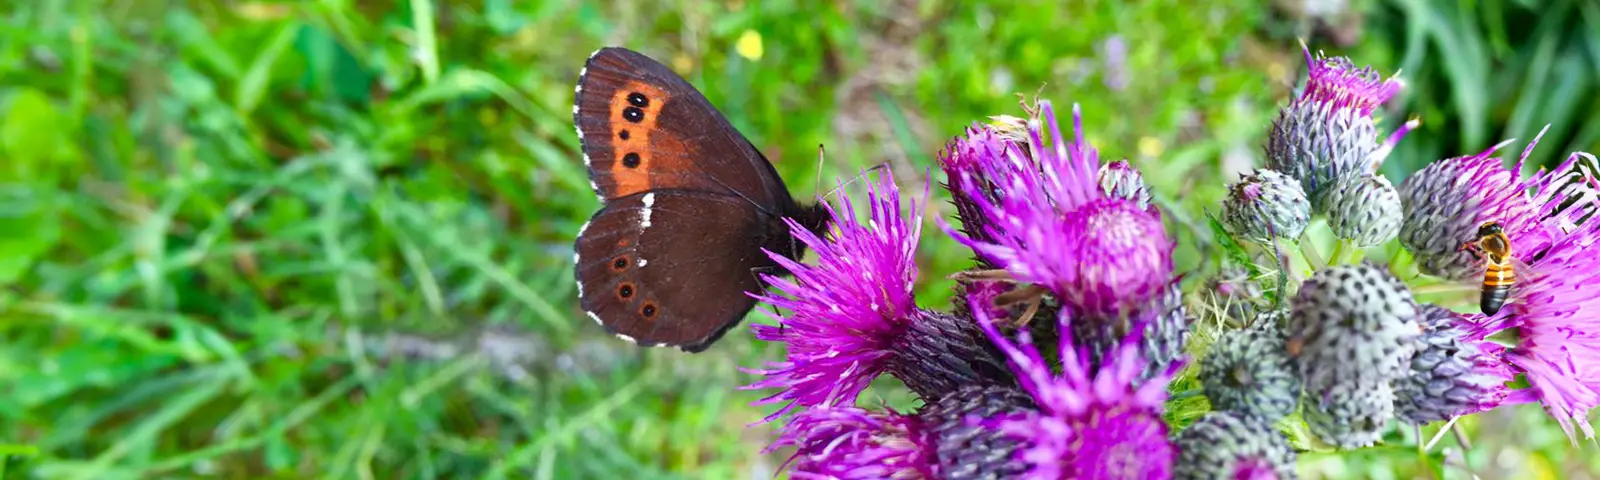 Bild Schmetterling sitzt auf einer blühenden Distel